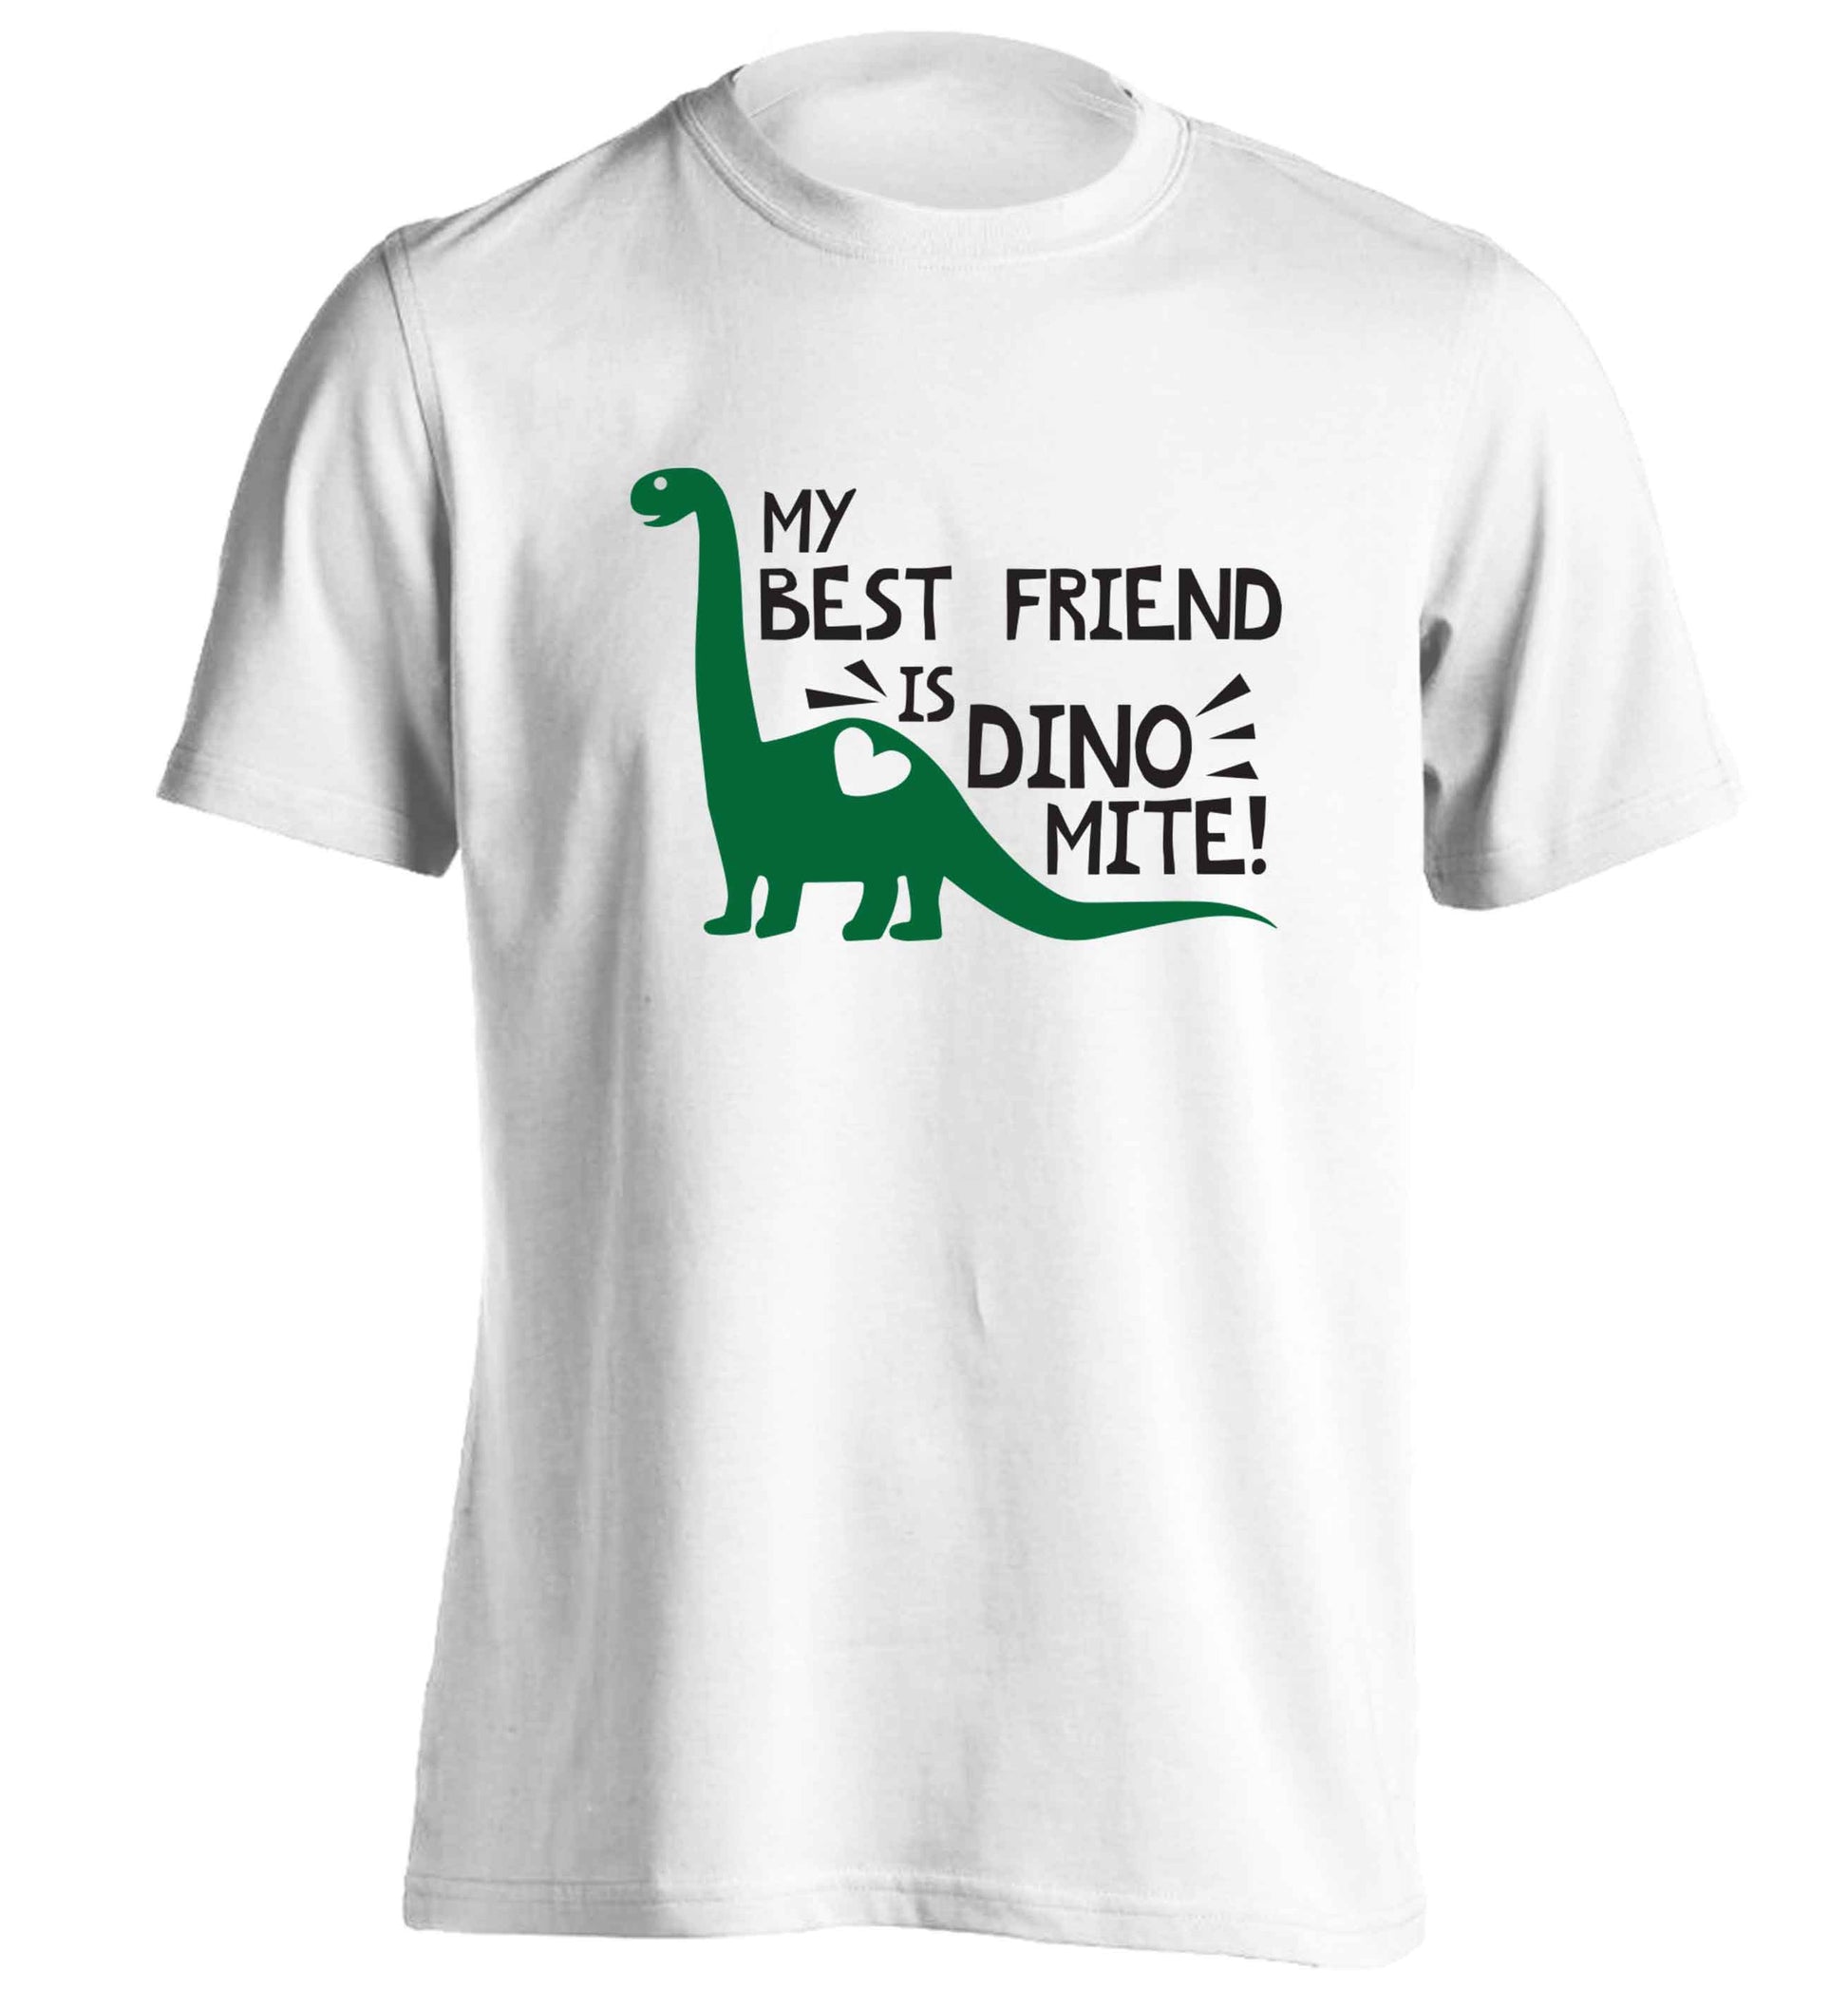 My best friend is dinomite! adults unisex white Tshirt 2XL